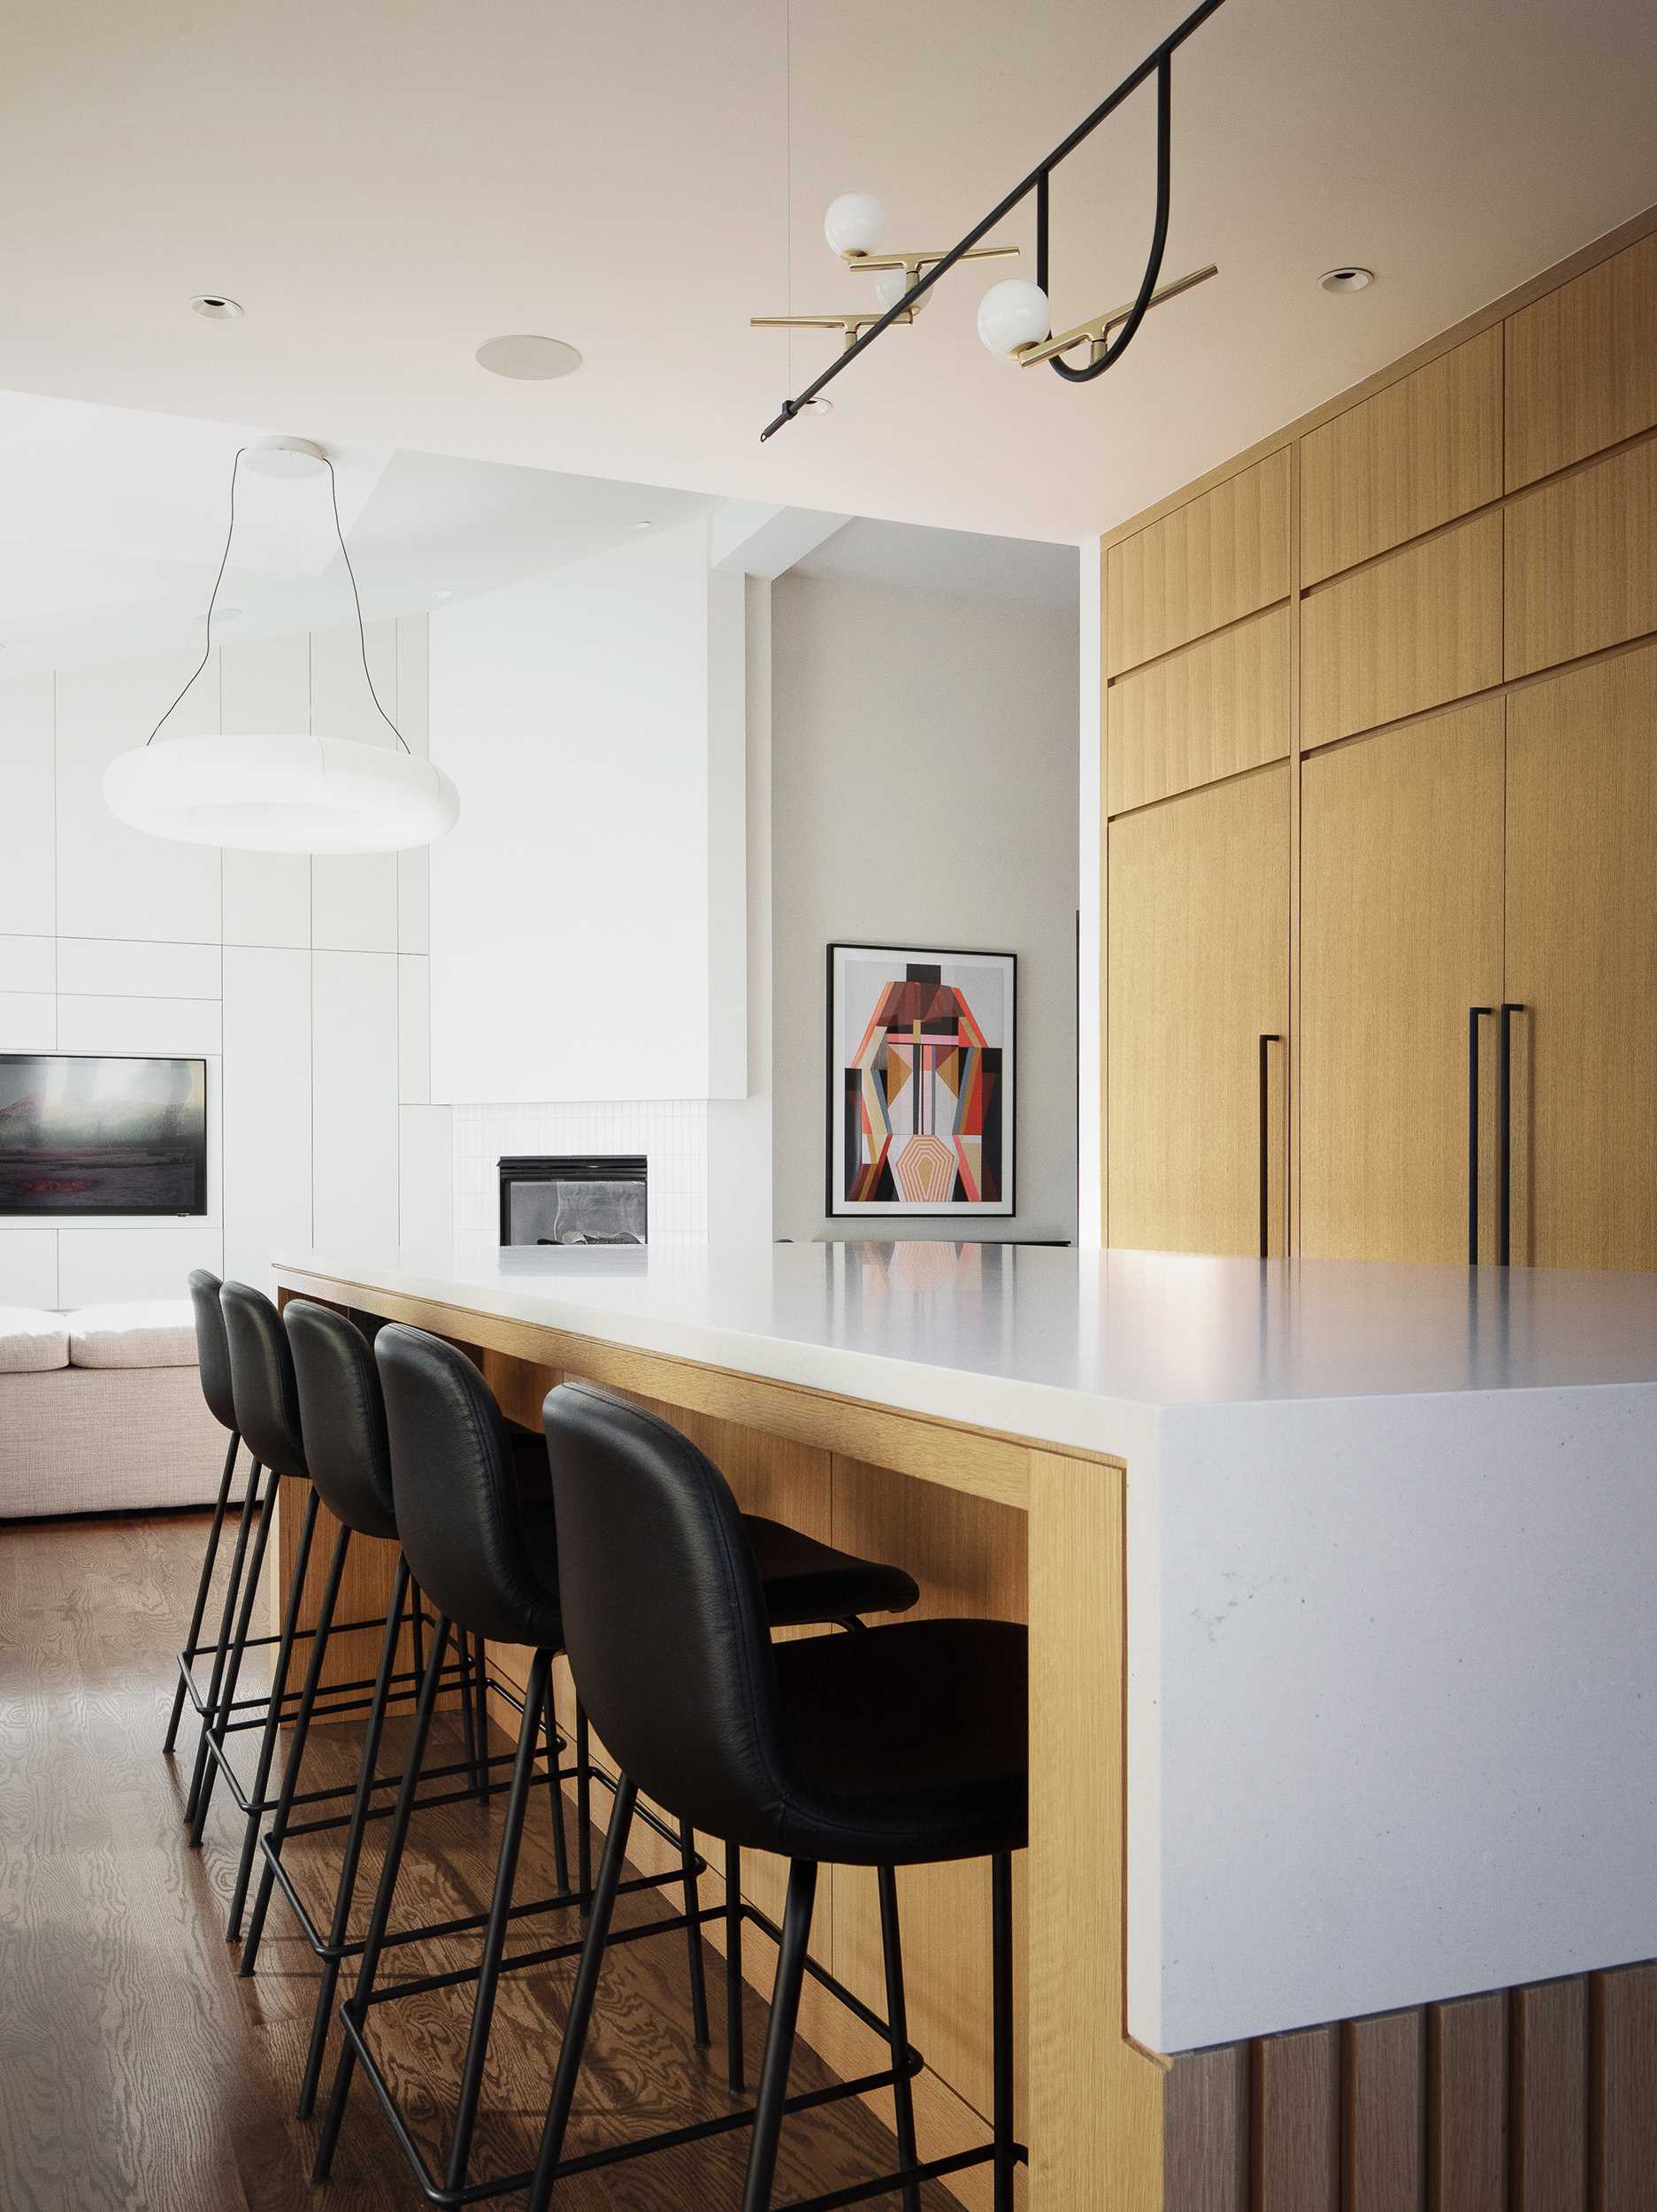 یک آشپزخانه مدرن با یک جزیره شامل کابینت‌های روکش بلوط سفید اره‌شده و میزهای کوارتز با پوشش بتنی است. 